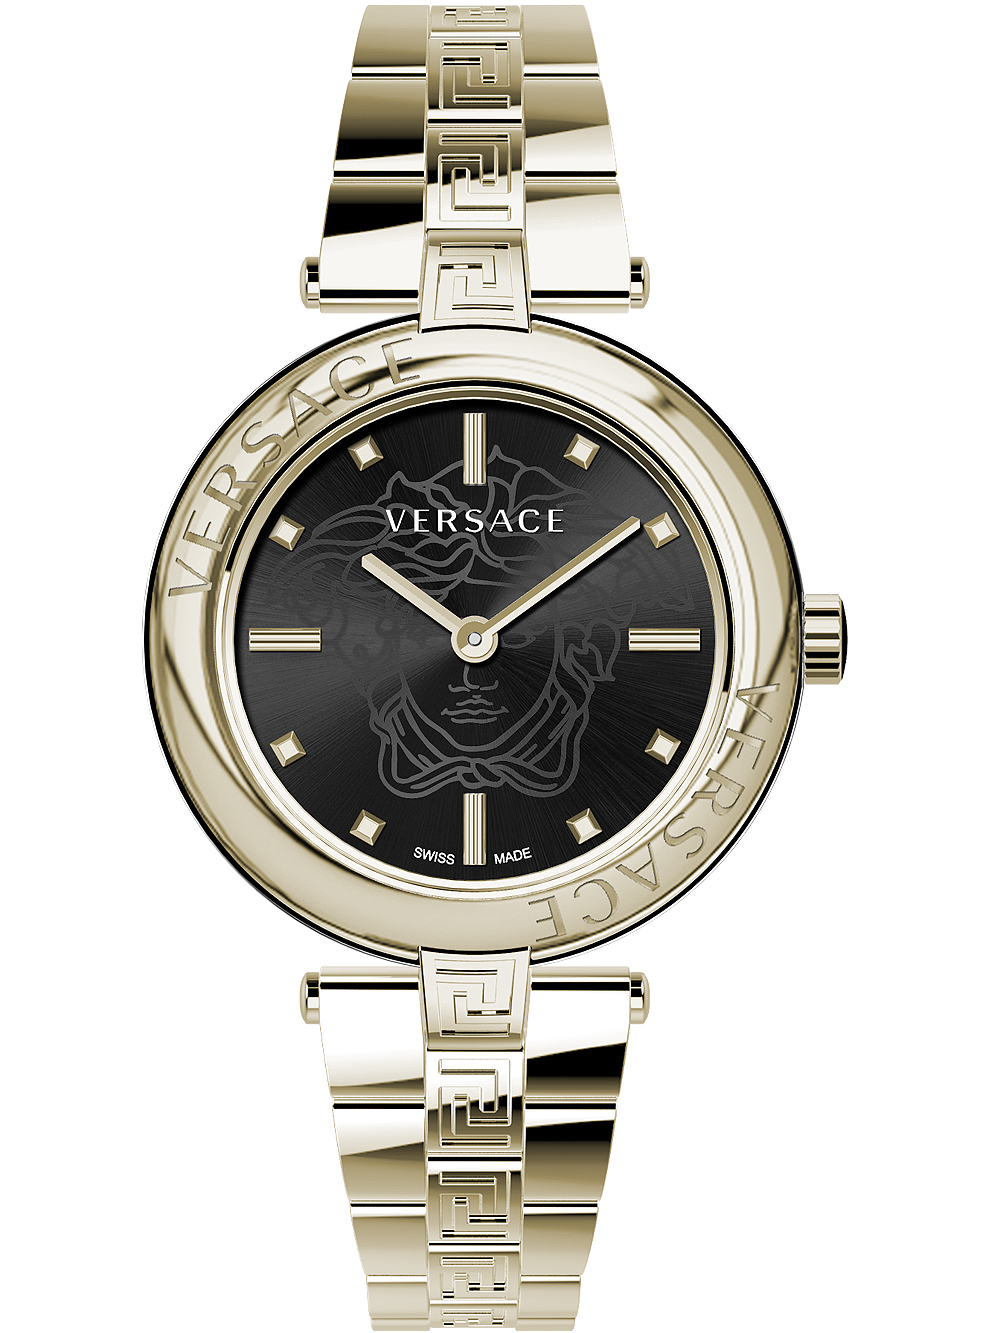 Dámské hodinky Versace VE2J00721 New Lady